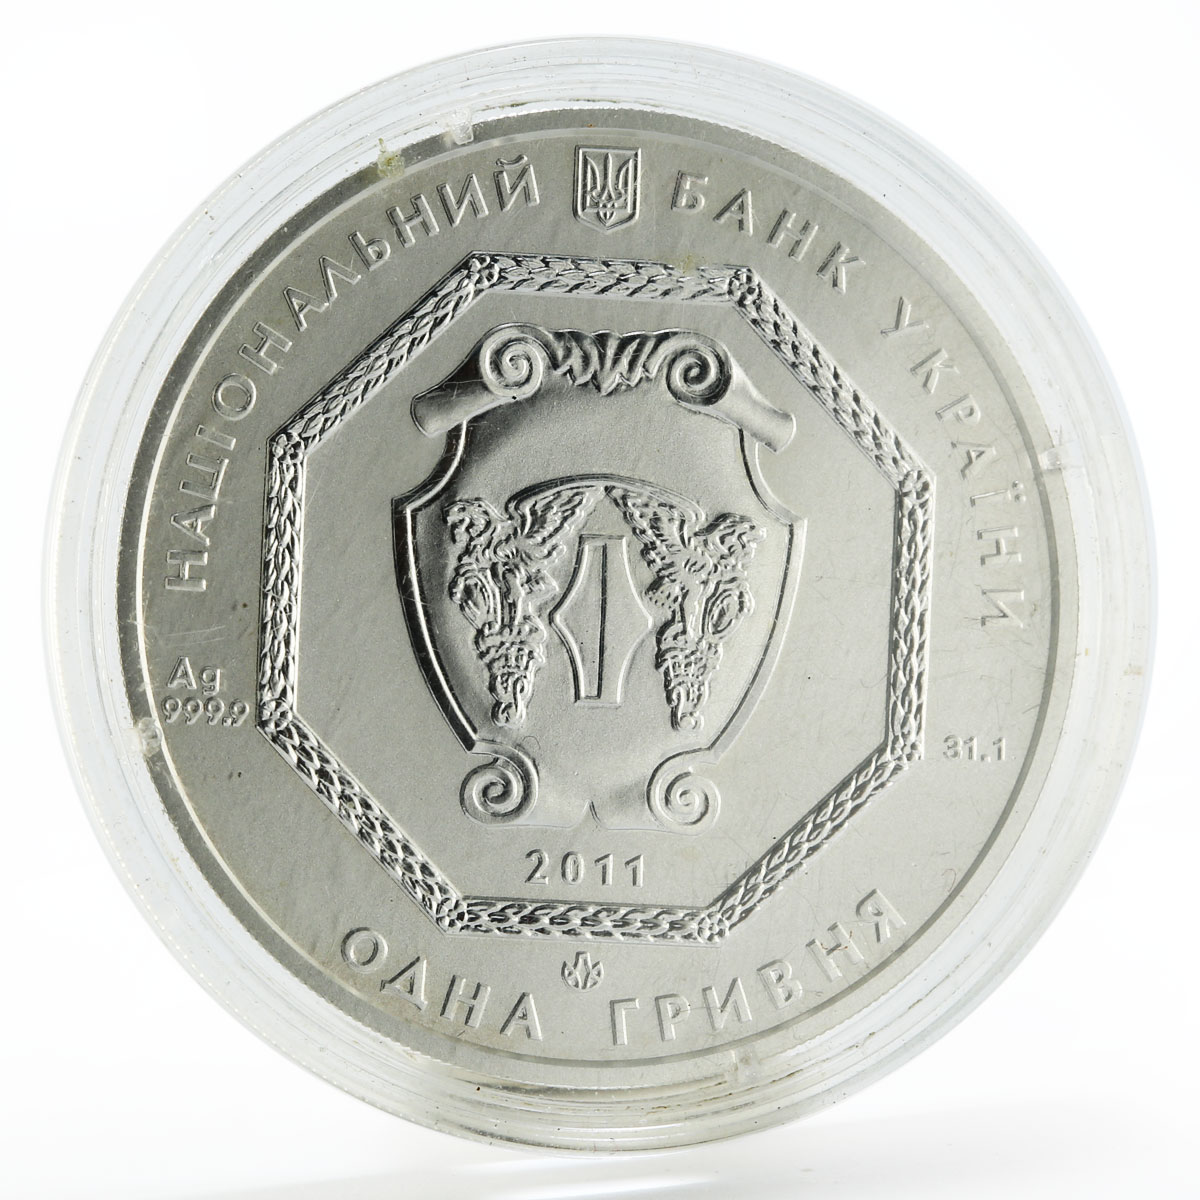 Ukraine 1 hryvna Archangel Michael silver coin 2011